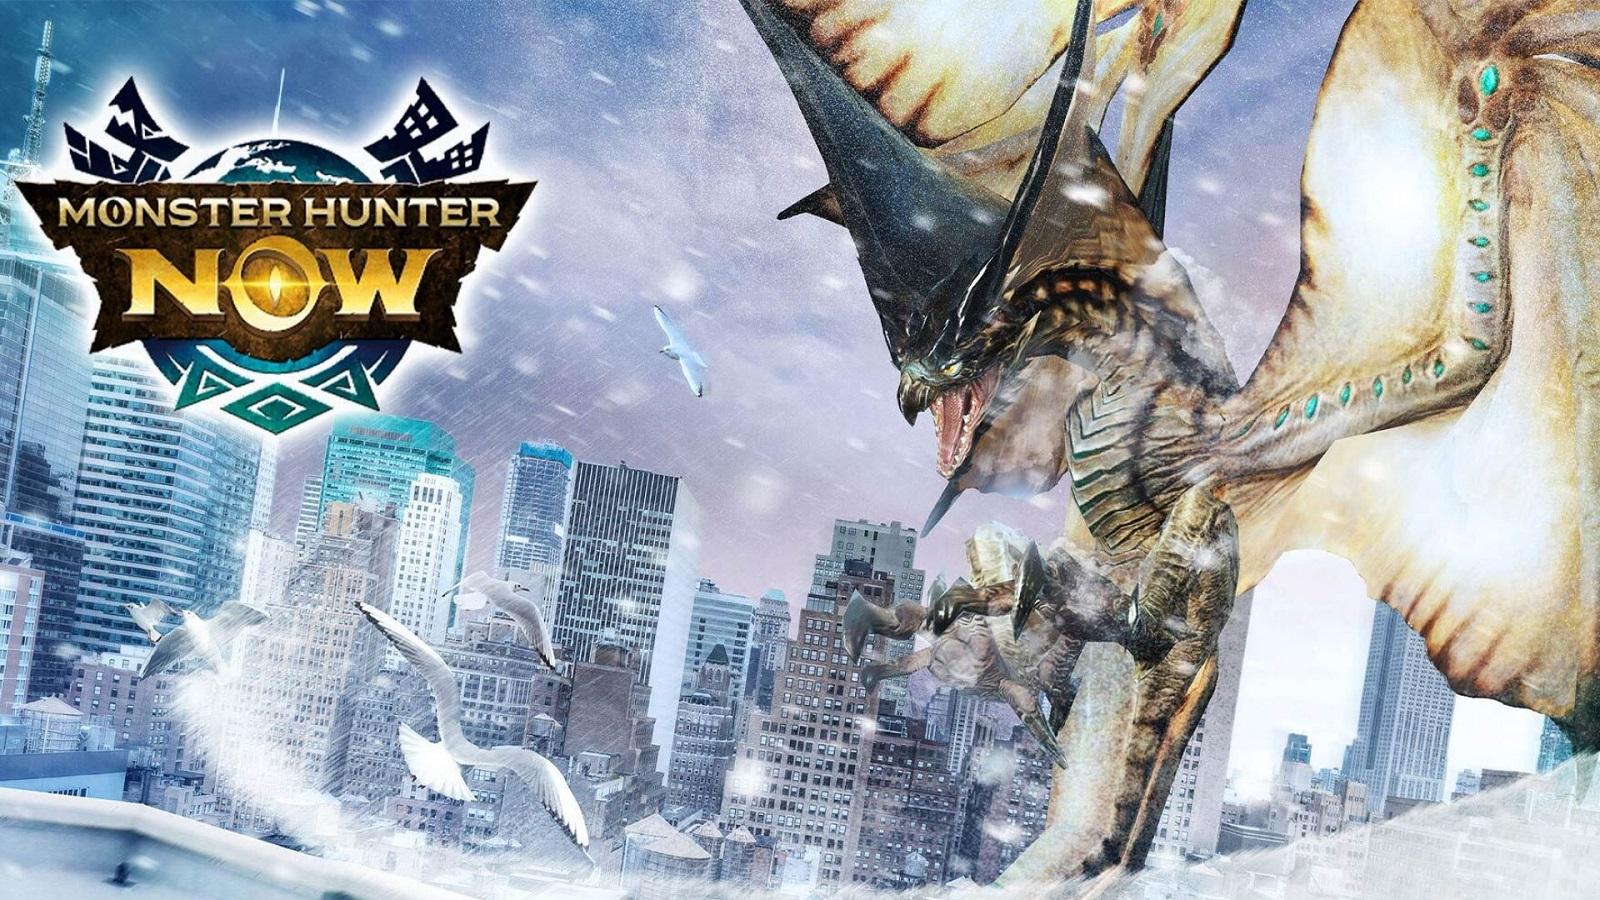 Monster Hunter Now Zinogre: Release date, events, weakness - Dexerto